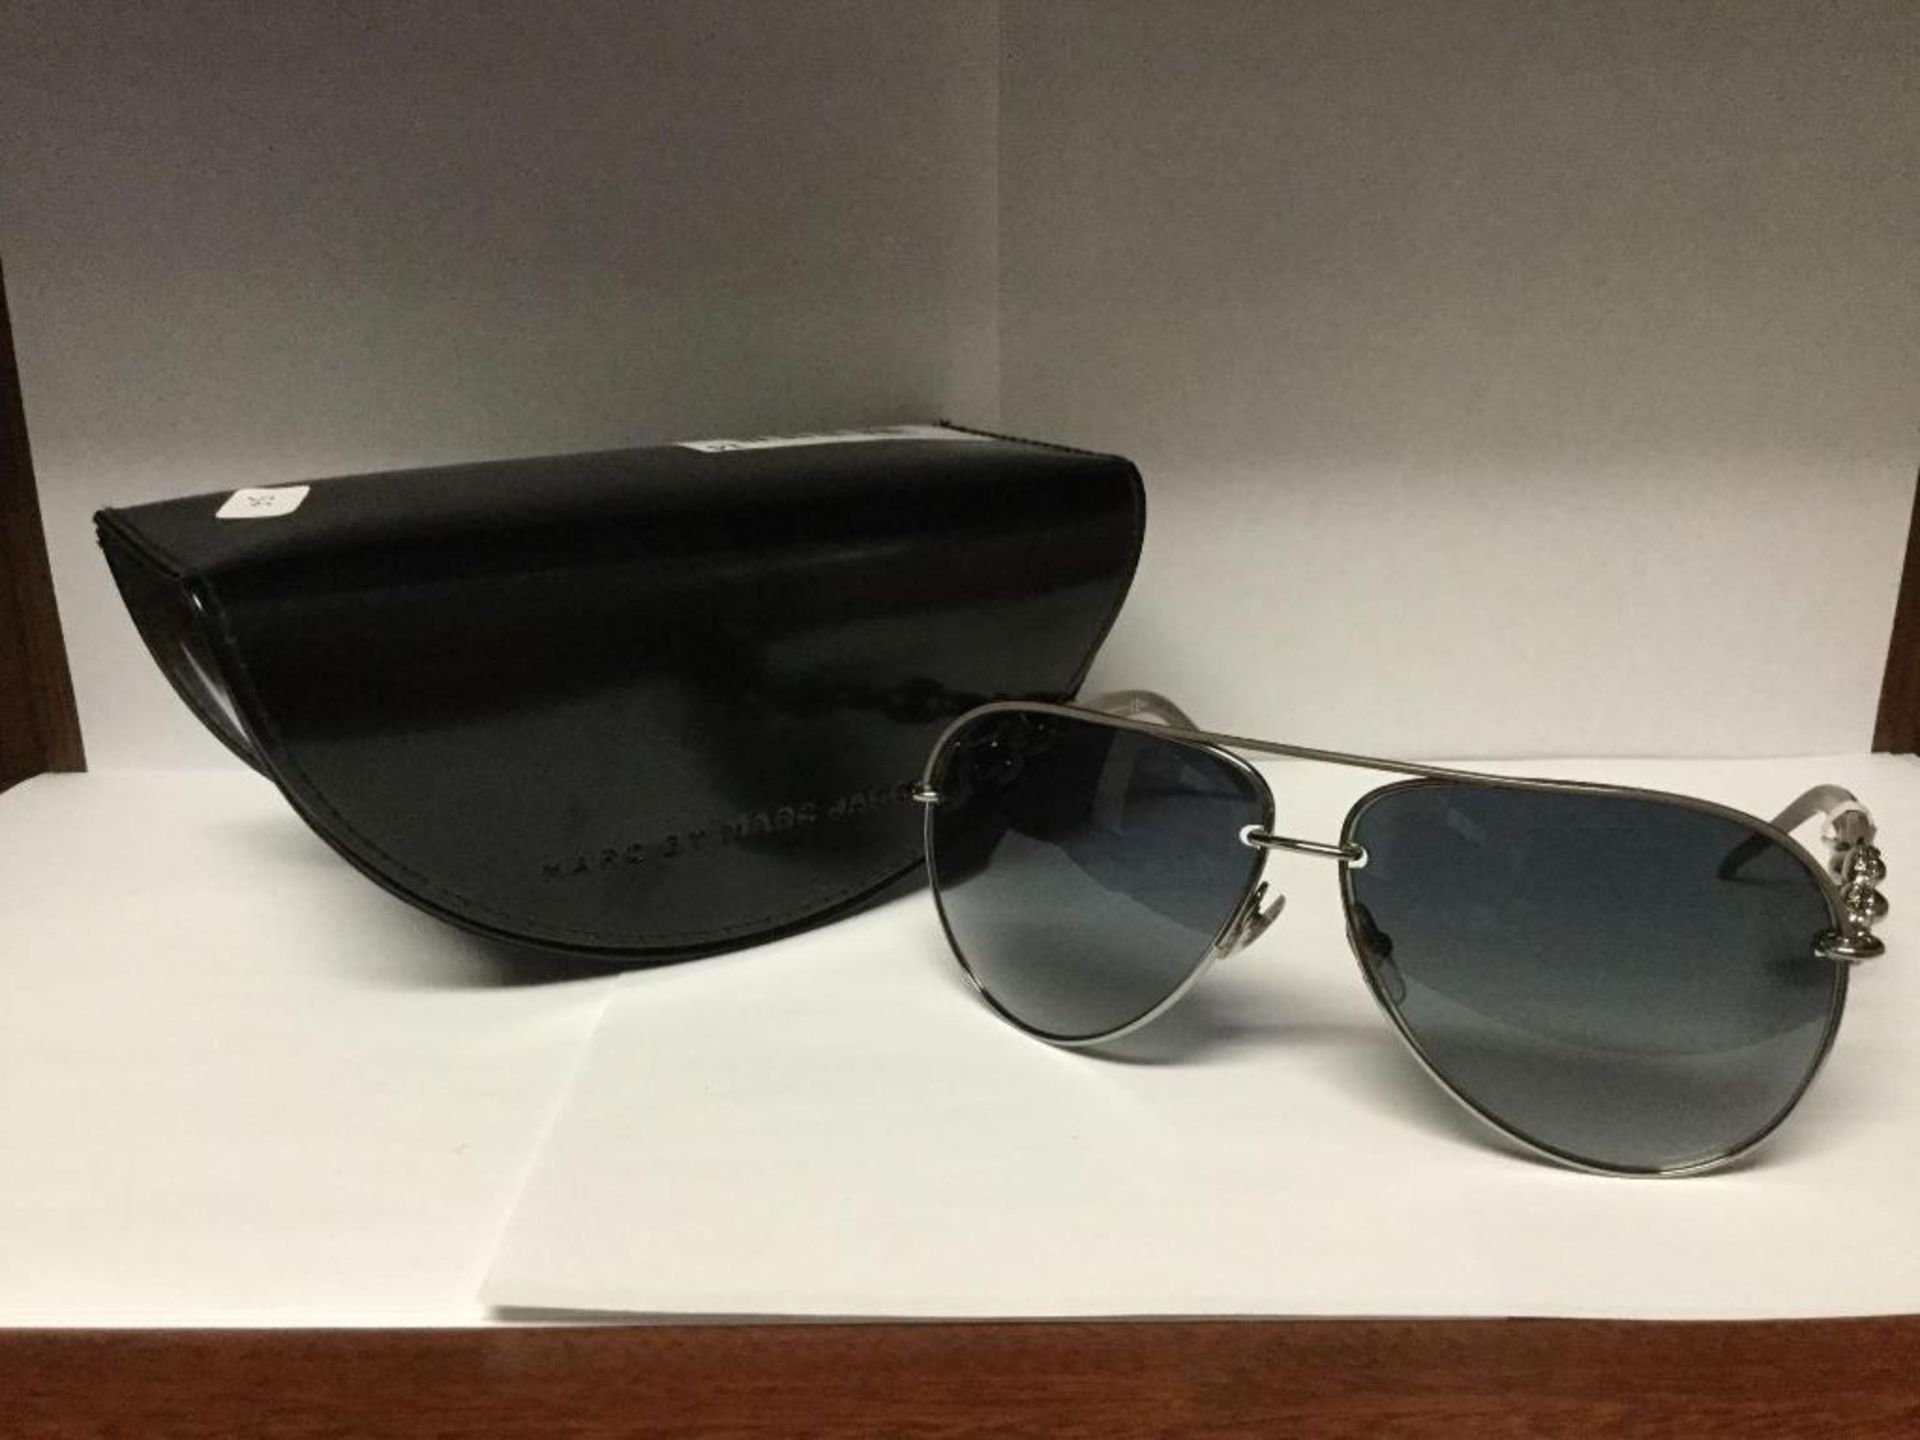 Gucci Sunglasses with Case - Value$ 490